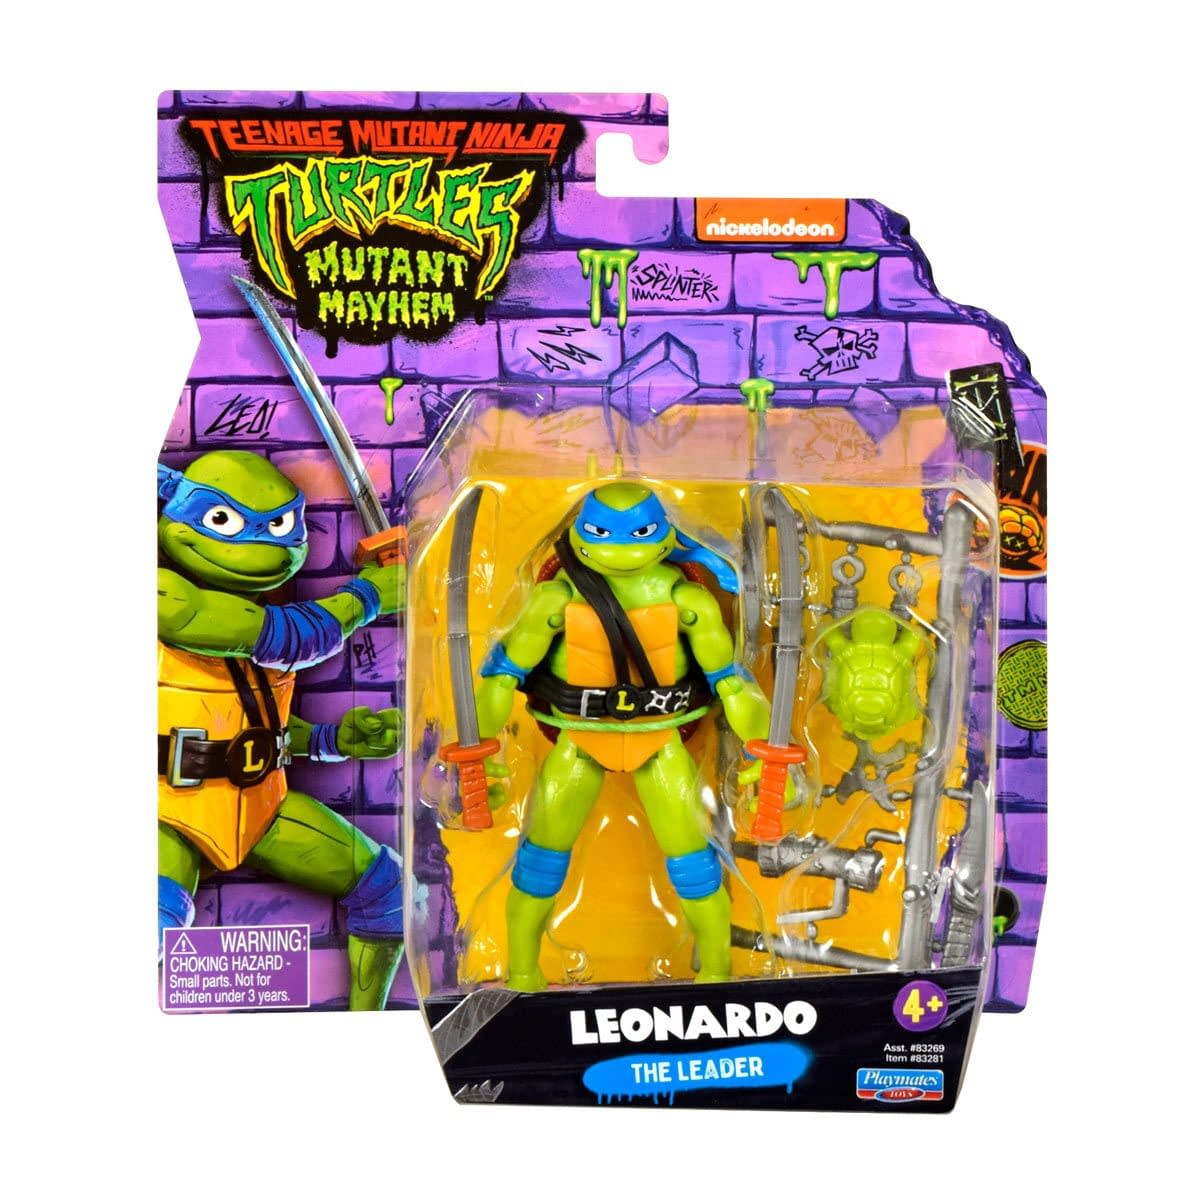 New Teenage Mutant Ninja Turtles Mutant Mayhem Figures Hit Shelves